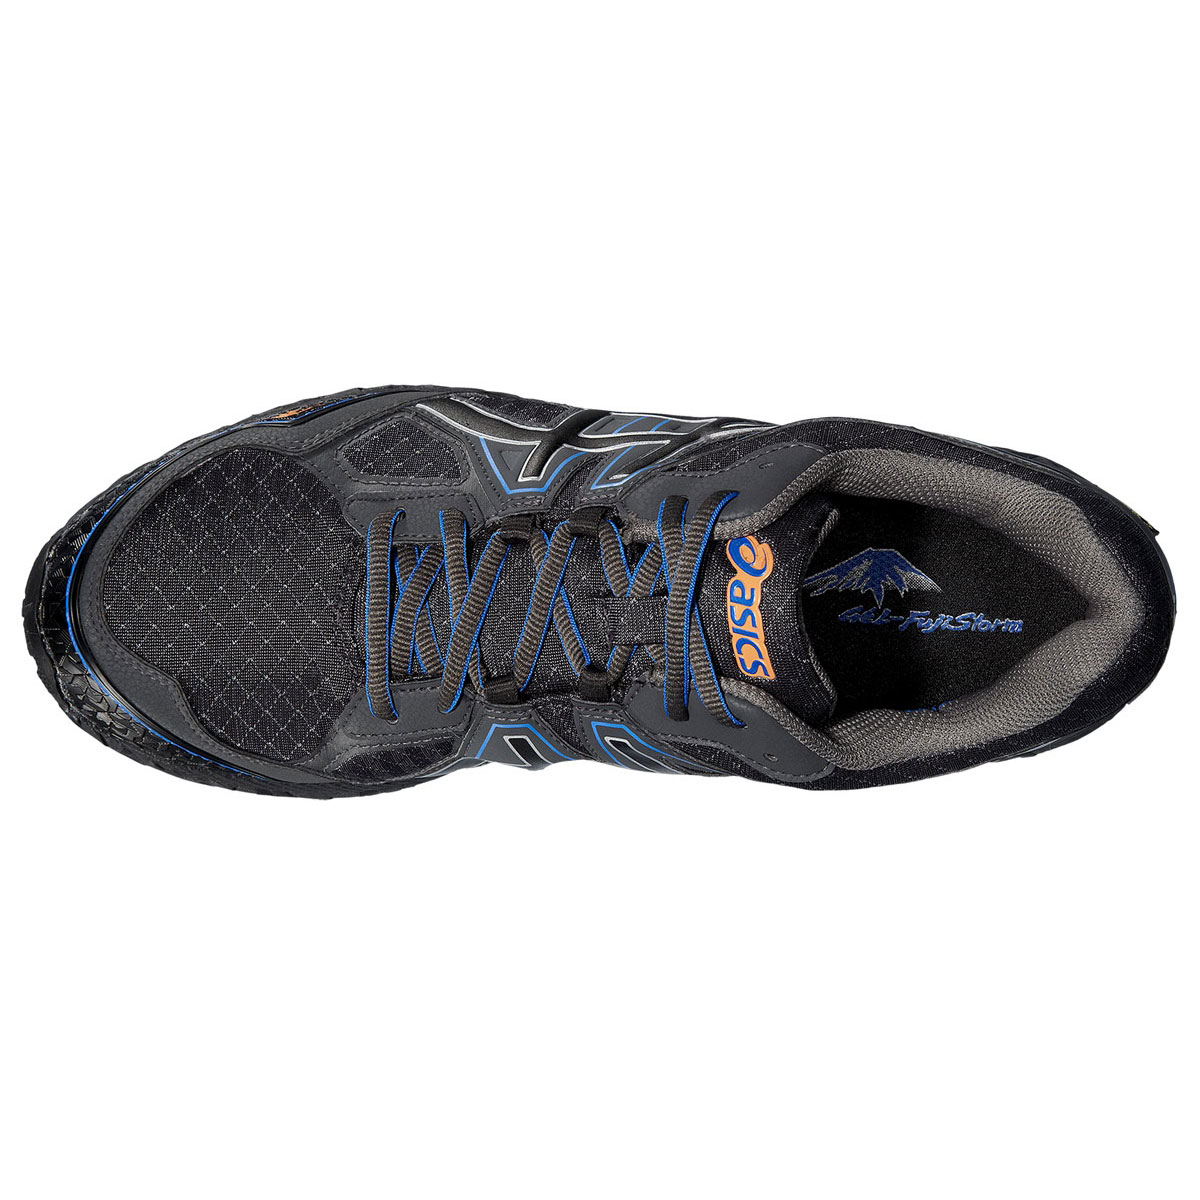 Купить обувь для ходьбы ASICS FUJISTORM G-TX (Q319N-9042) в интернет-магазине "Звезда Олимпа". Надежные кроссовки для по бездорожью и турпоходов с верхом из GORE-TEX ASICS FUJISTORM G-TX - заказать доставкой по